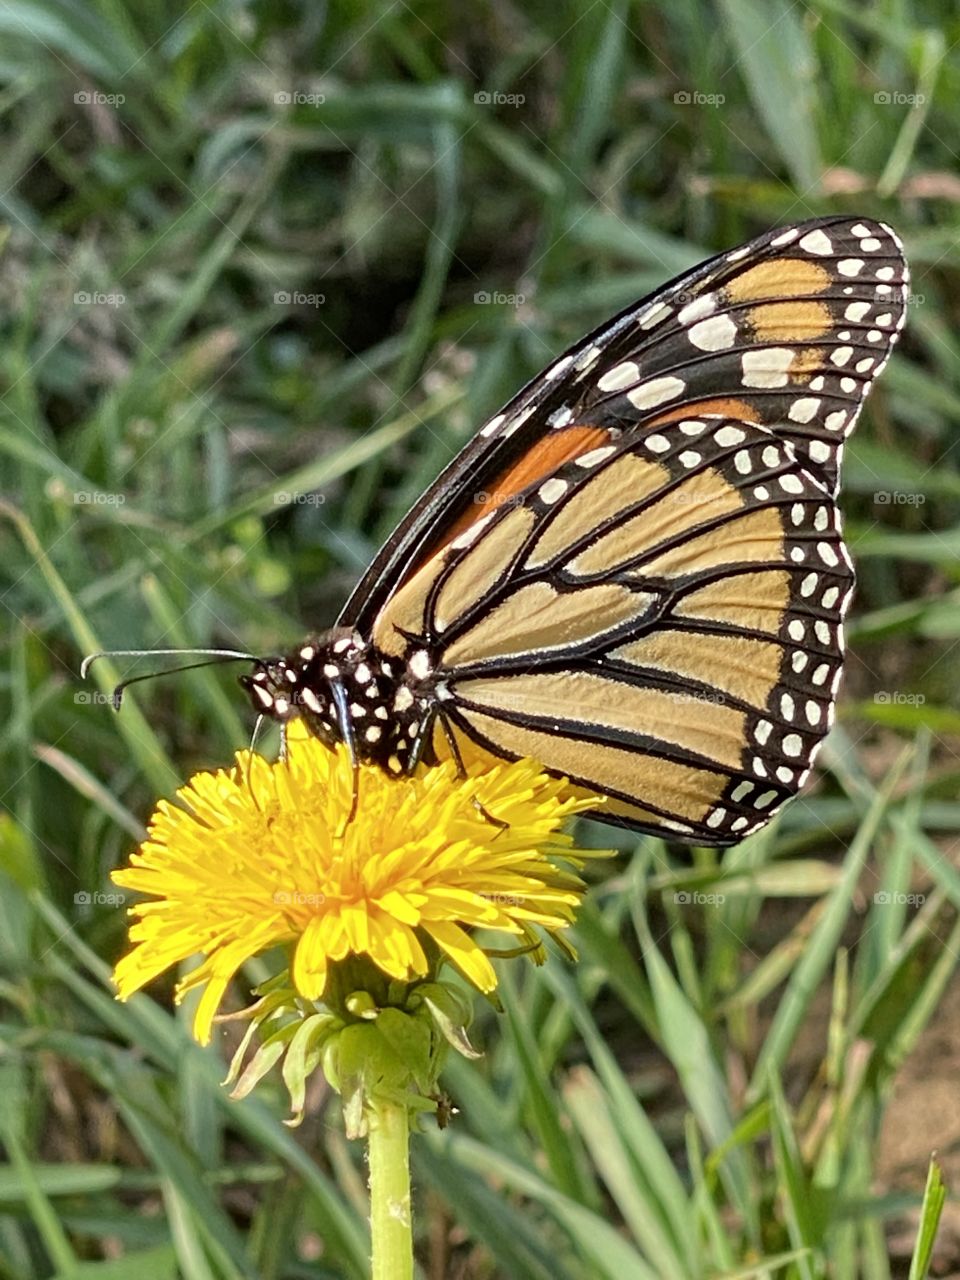 Monarch Butterfly on a Dandelion flower 